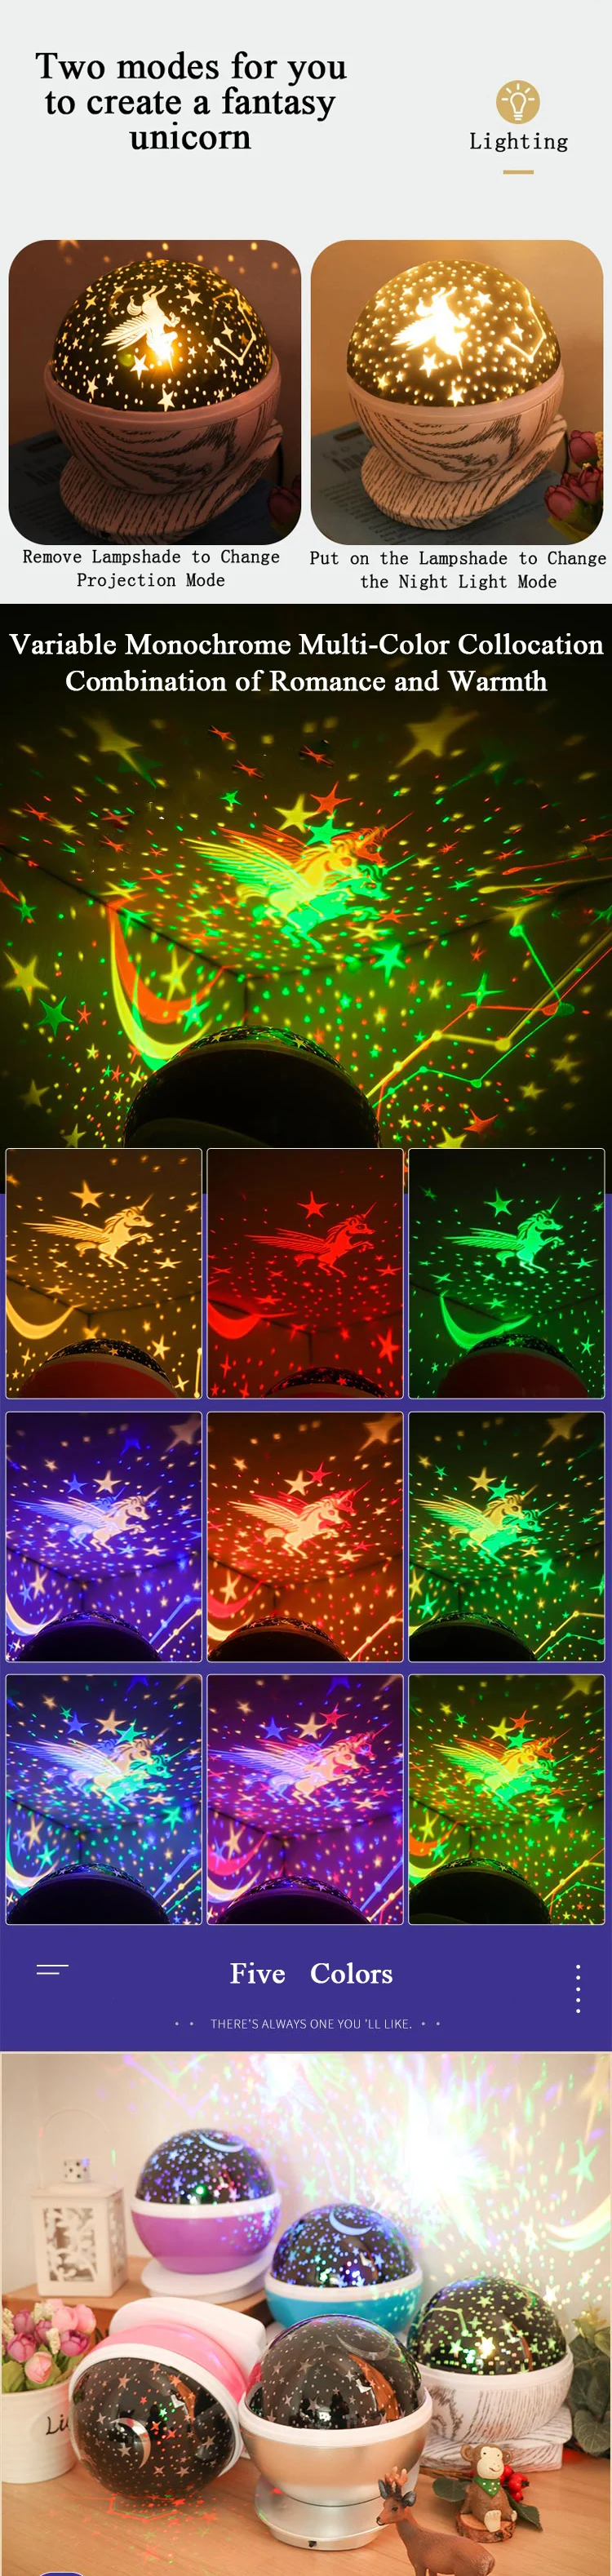 Подарки для детей звезд звездное небо светодиодный Ночной Светильник проектор Луна лампы Батарея USB атмосферная лампа Спальня